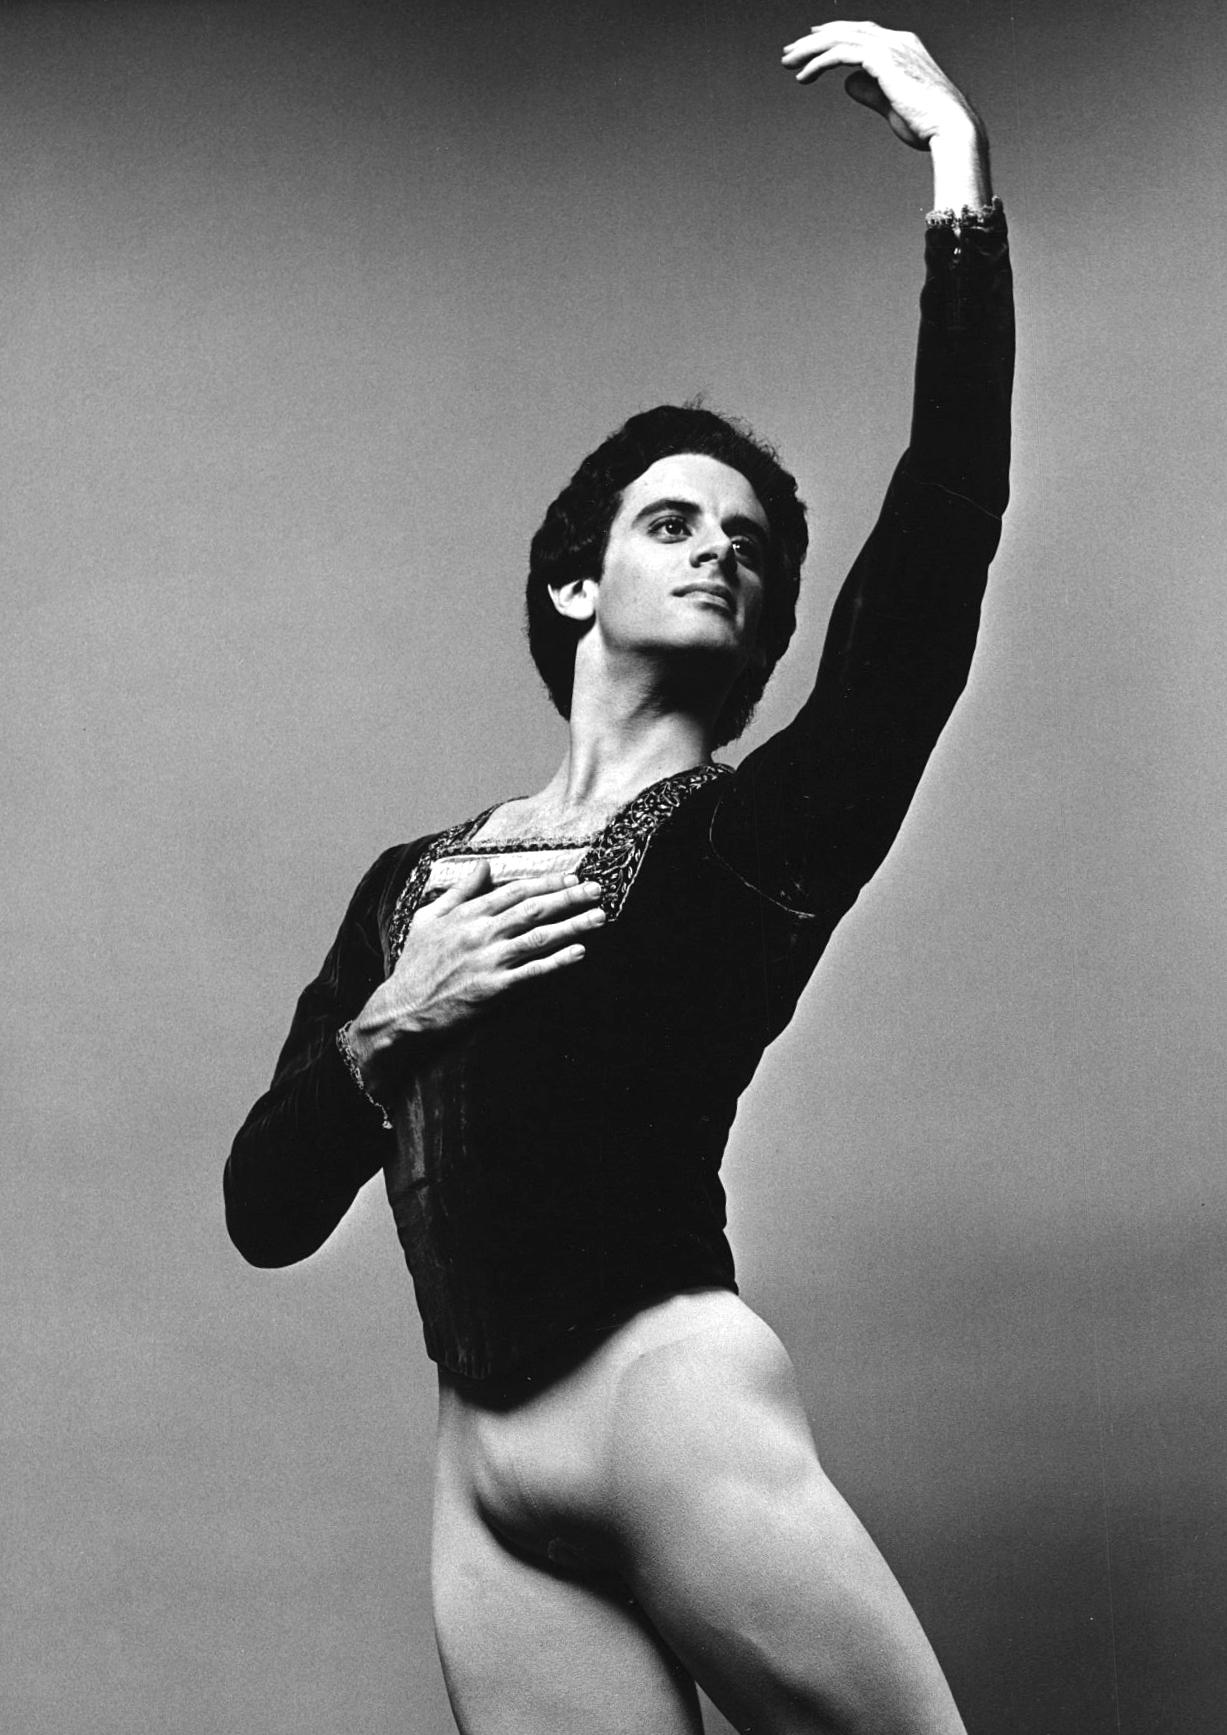 Der Tänzer Fernando Bujones, fotografiert für das Dance Magazine, signiert von Mitchell – Photograph von Jack Mitchell